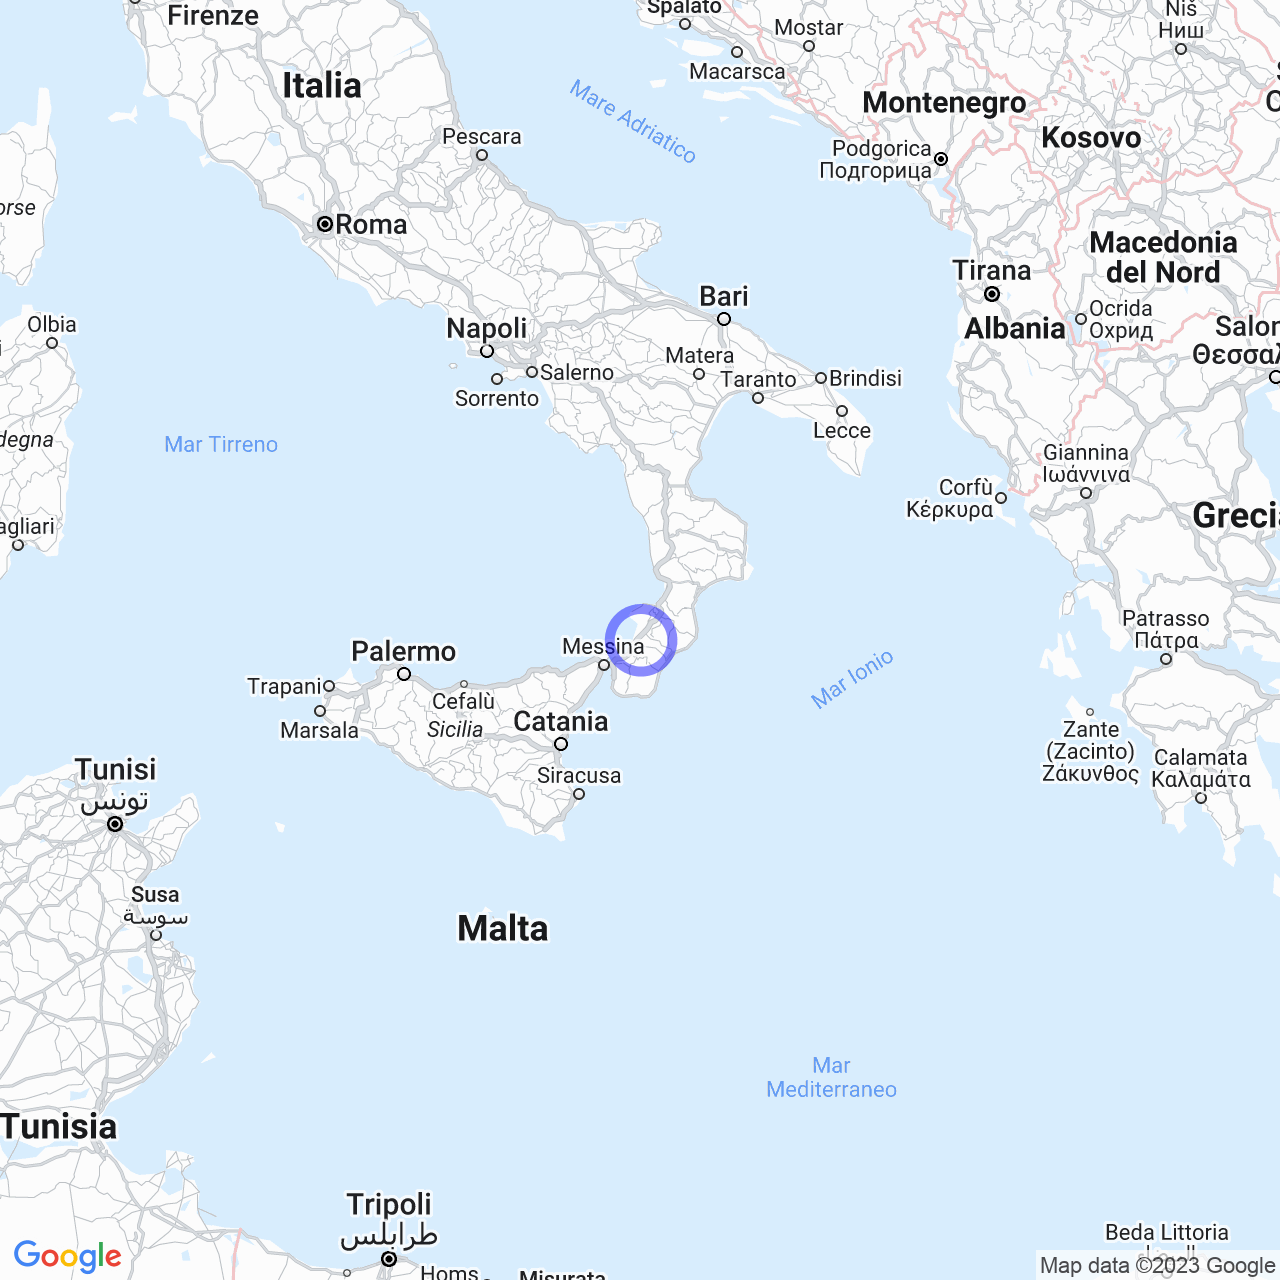 La 'ndrangheta in provincia di Reggio Calabria: Struttura e locali